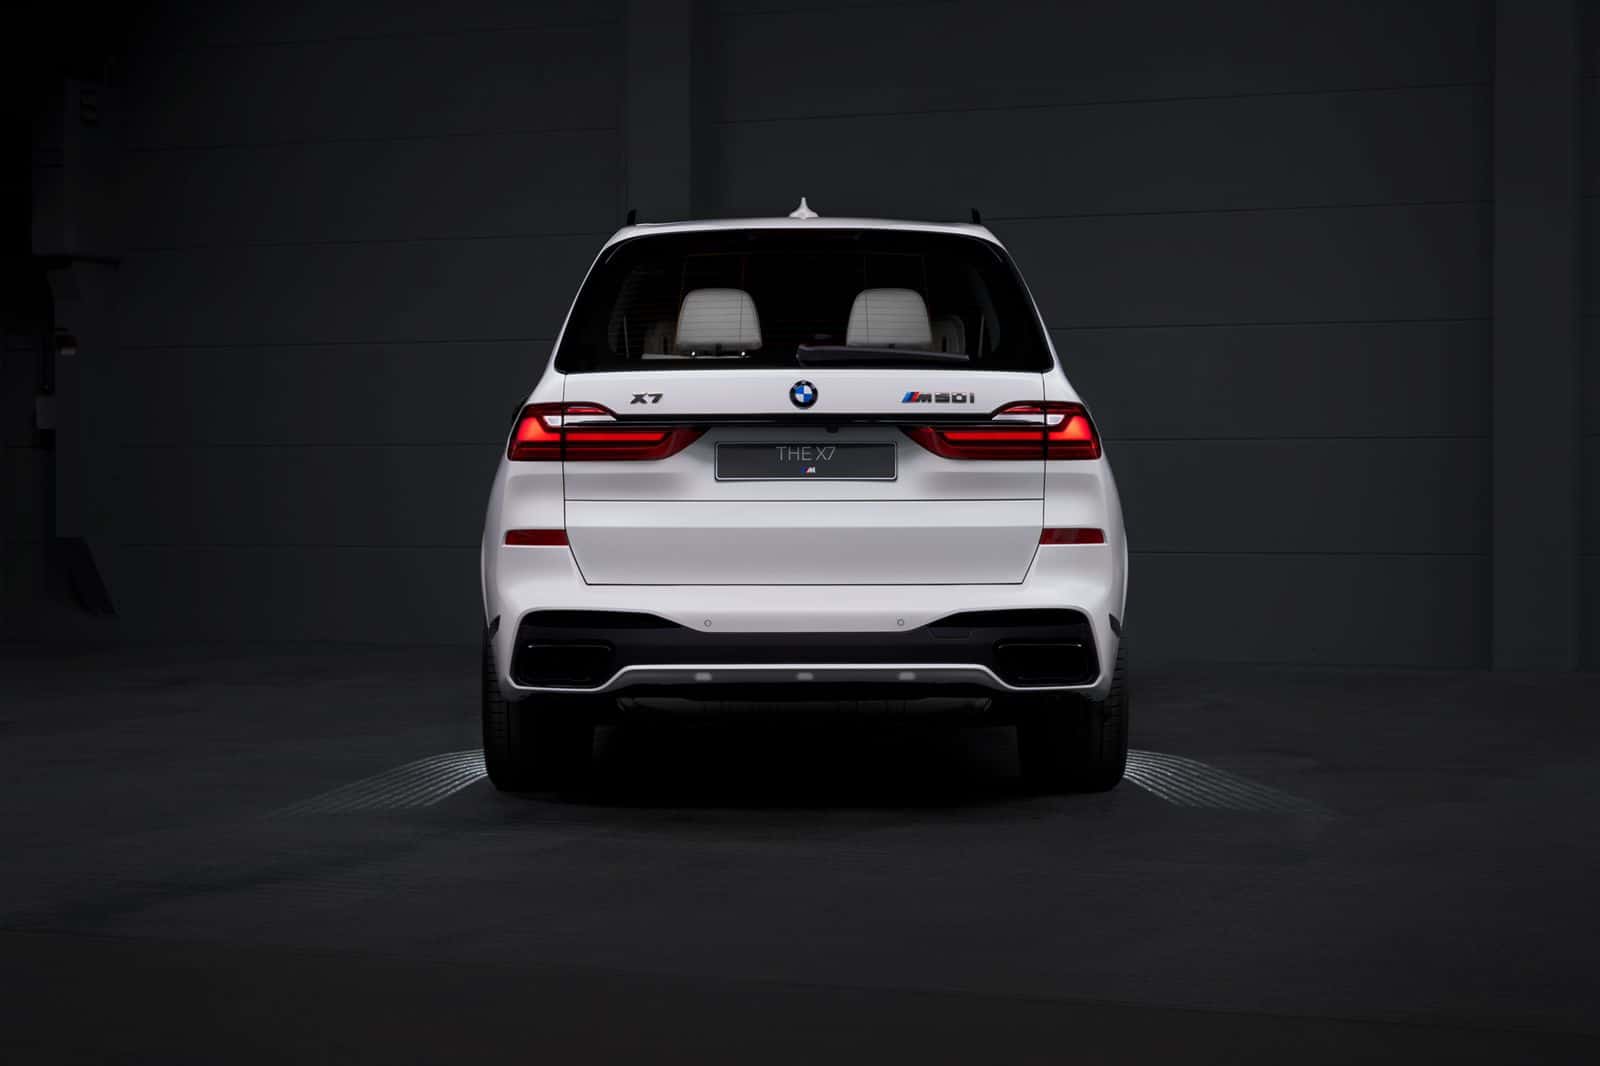 BMW presenta el X7, el cinquantè aniversari de la fundació dels Emirats Àrabs Units, amb motiu de la celebració del jubileu d'or al país